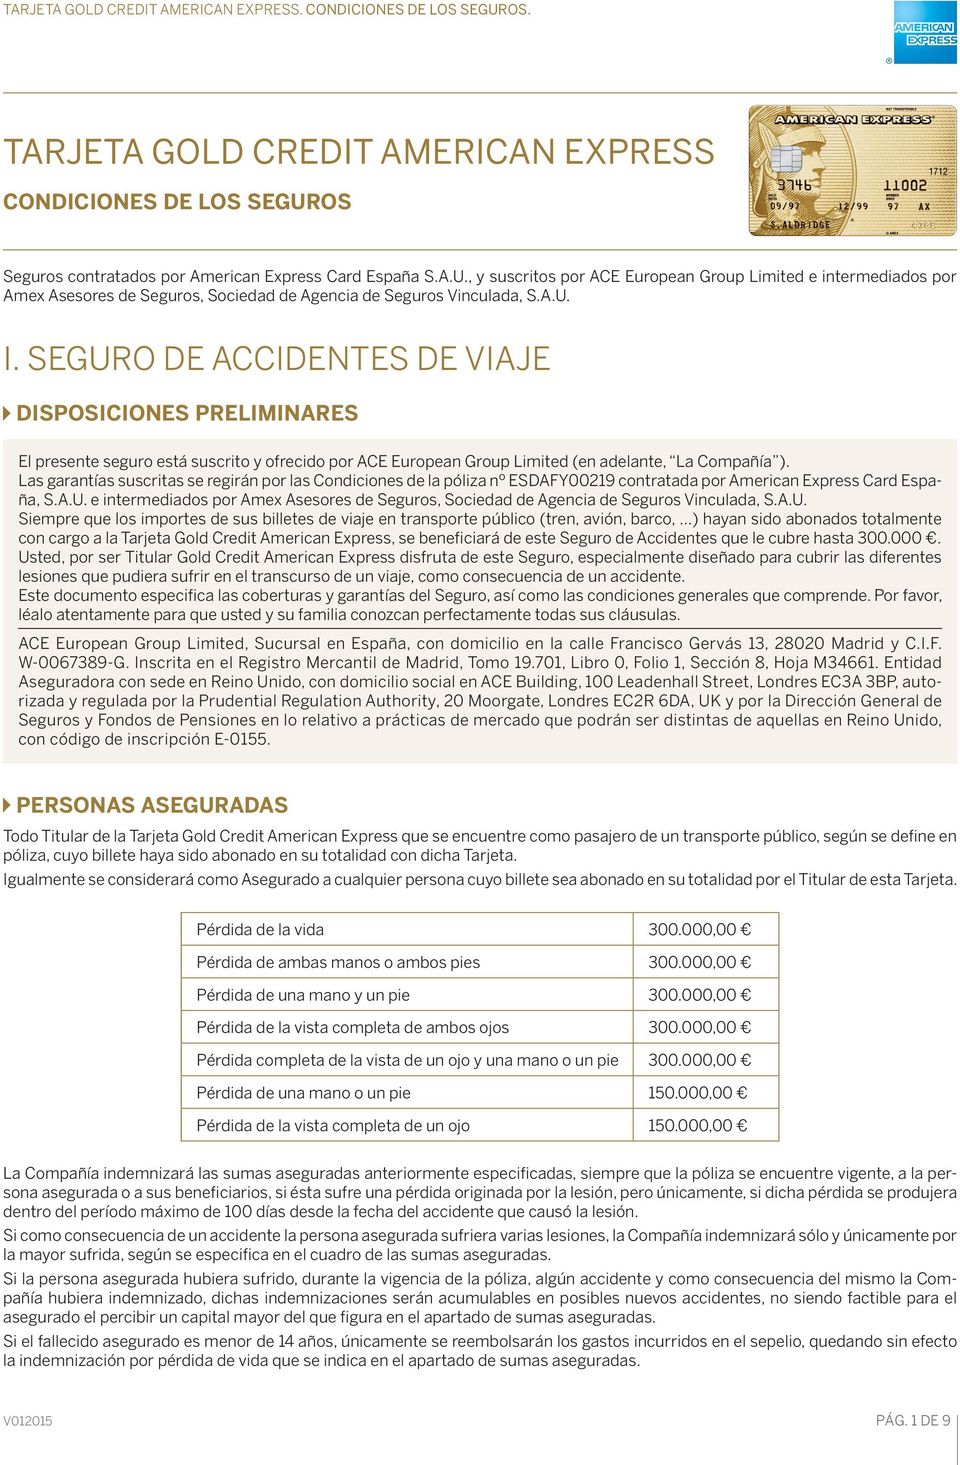 Las garantías suscritas se regirán por las Condiciones de la póliza nº ESDAFY00219 contratada por American Express Card España, S.A.U.